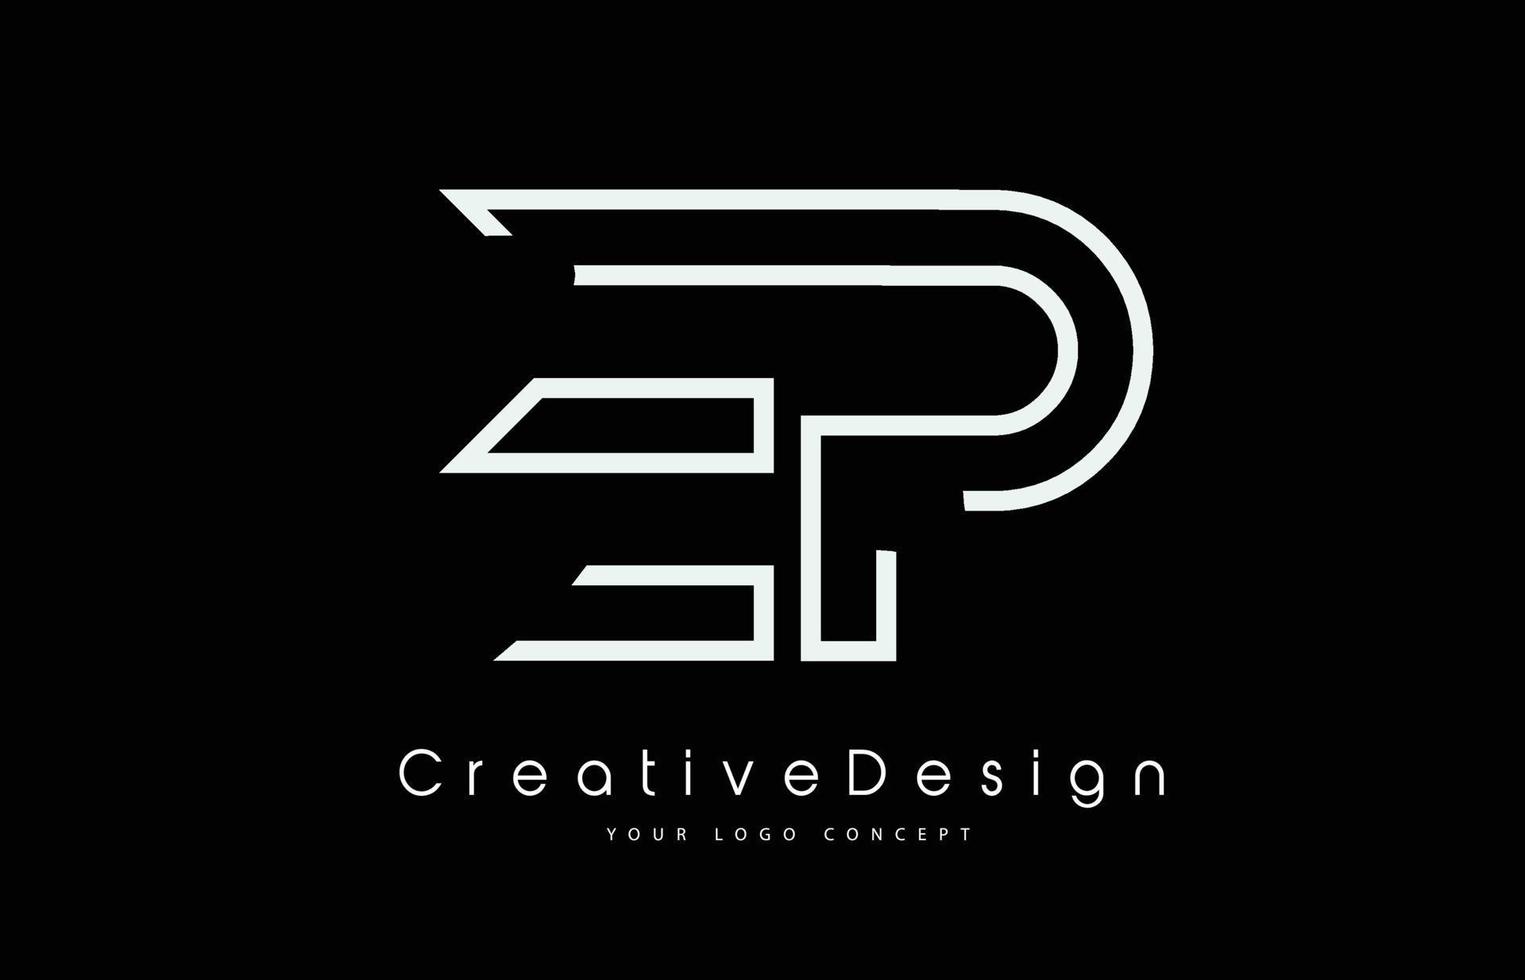 ep ep brief logo ontwerp in witte kleuren. vector